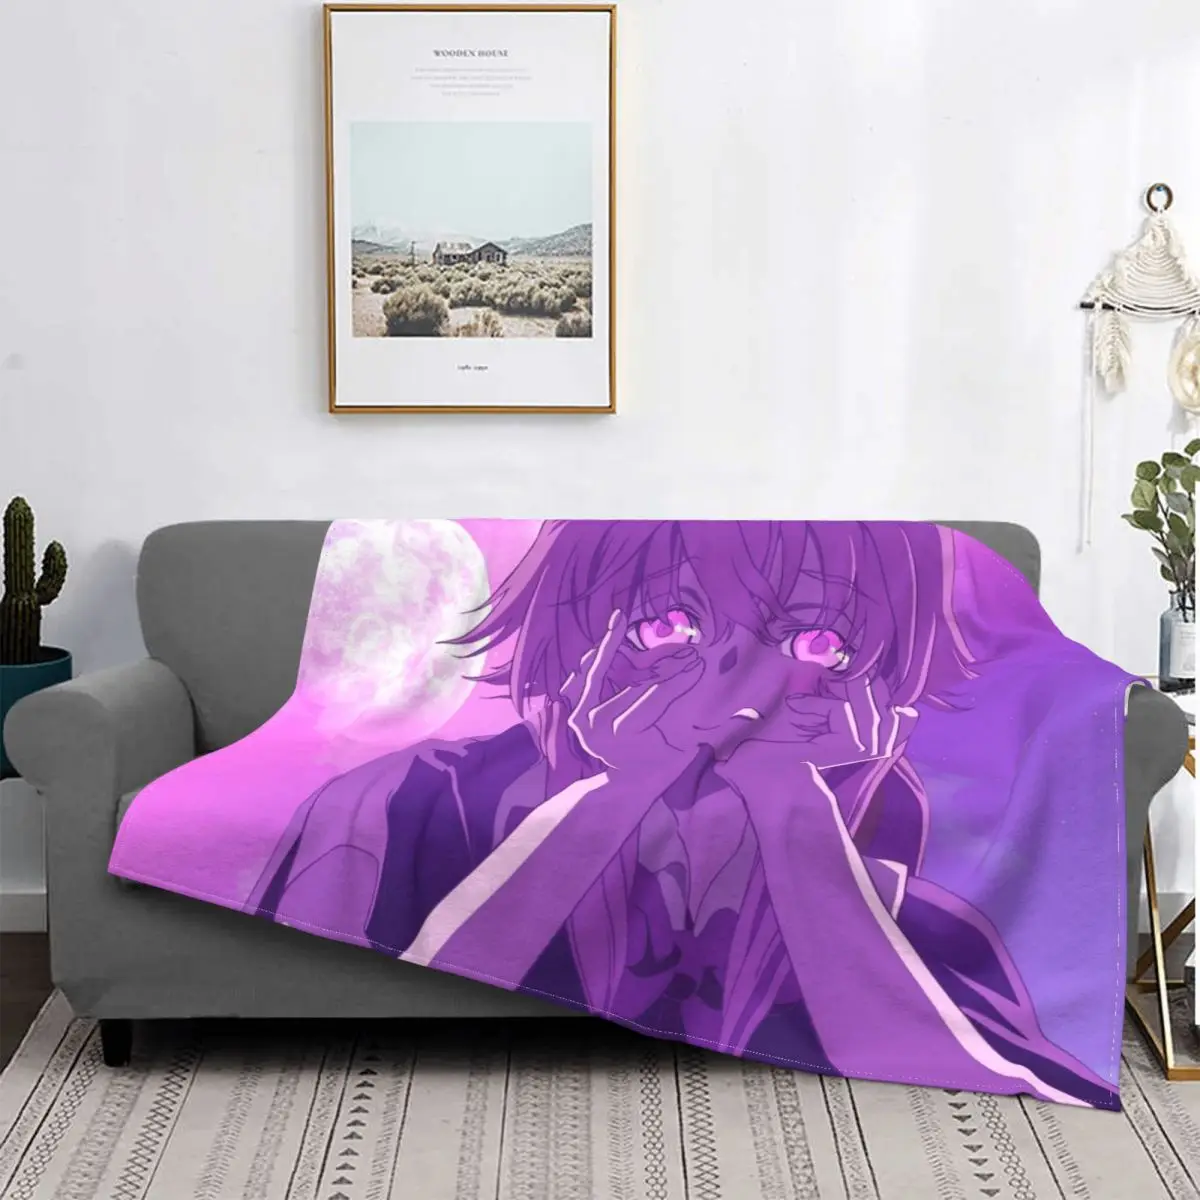 

Yuno Gasai ковер для гостиной текстильный флокирующий одеяло для кровати покрывала Роскошное Одеяло фланелевое одеяло